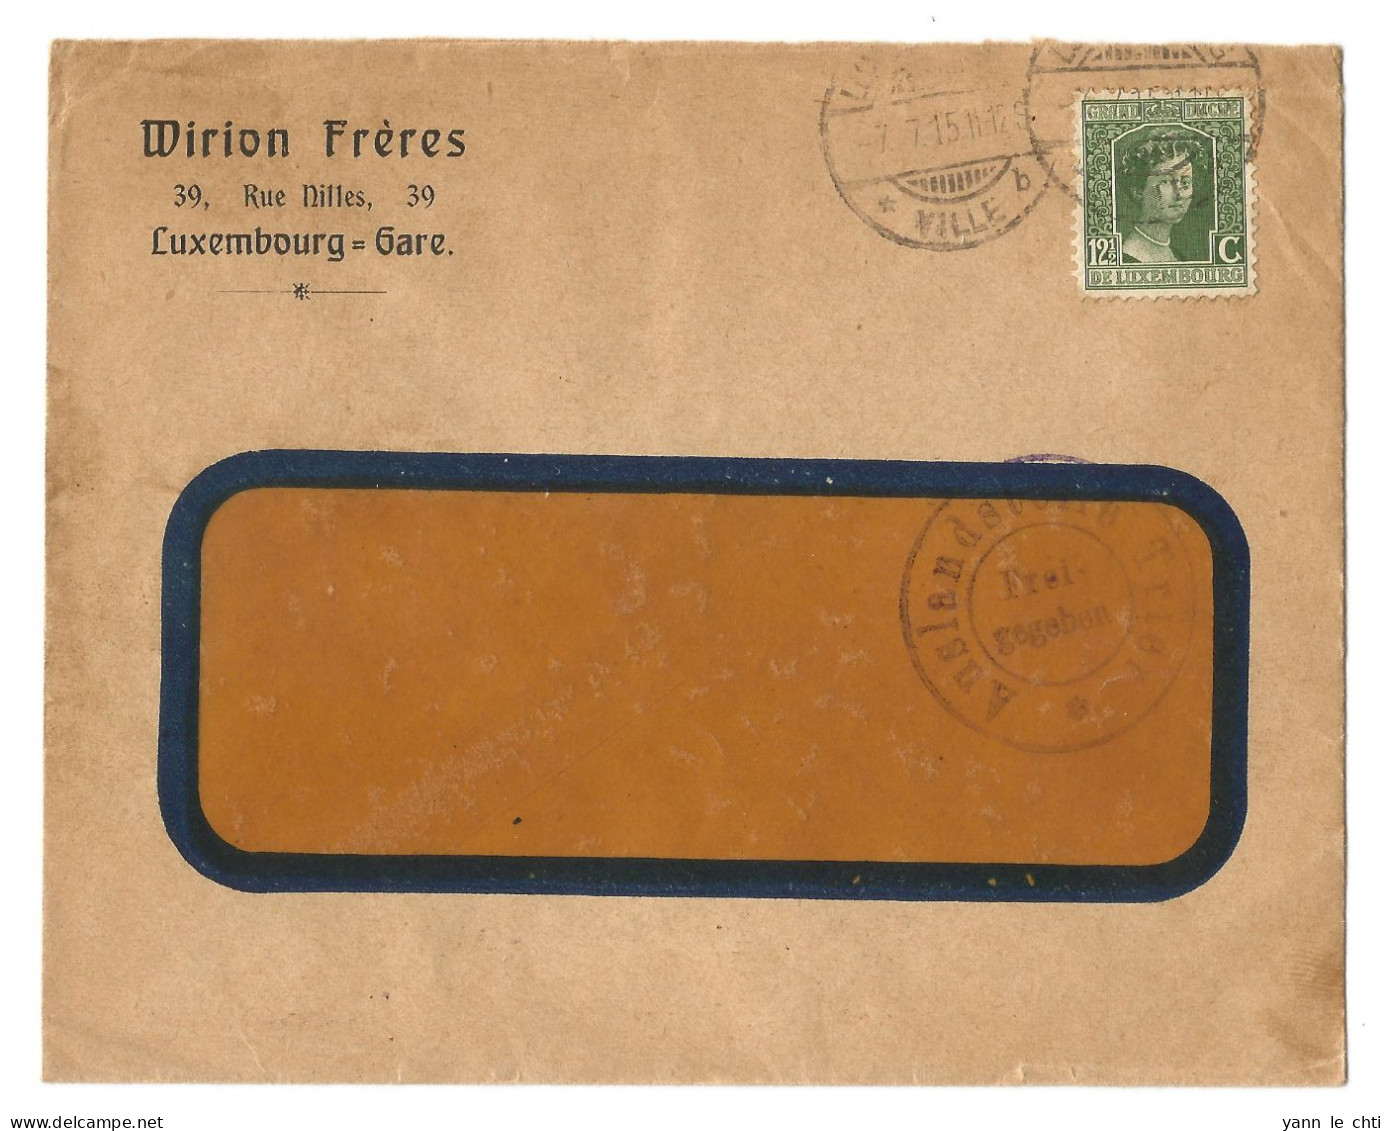 Enveloppe Brief 1915 Wirion Freres Luxembourg Gare 12 1/2 Cents Auslandstelle Trier Frei Gegeben Censure - 1914-24 Marie-Adelaide